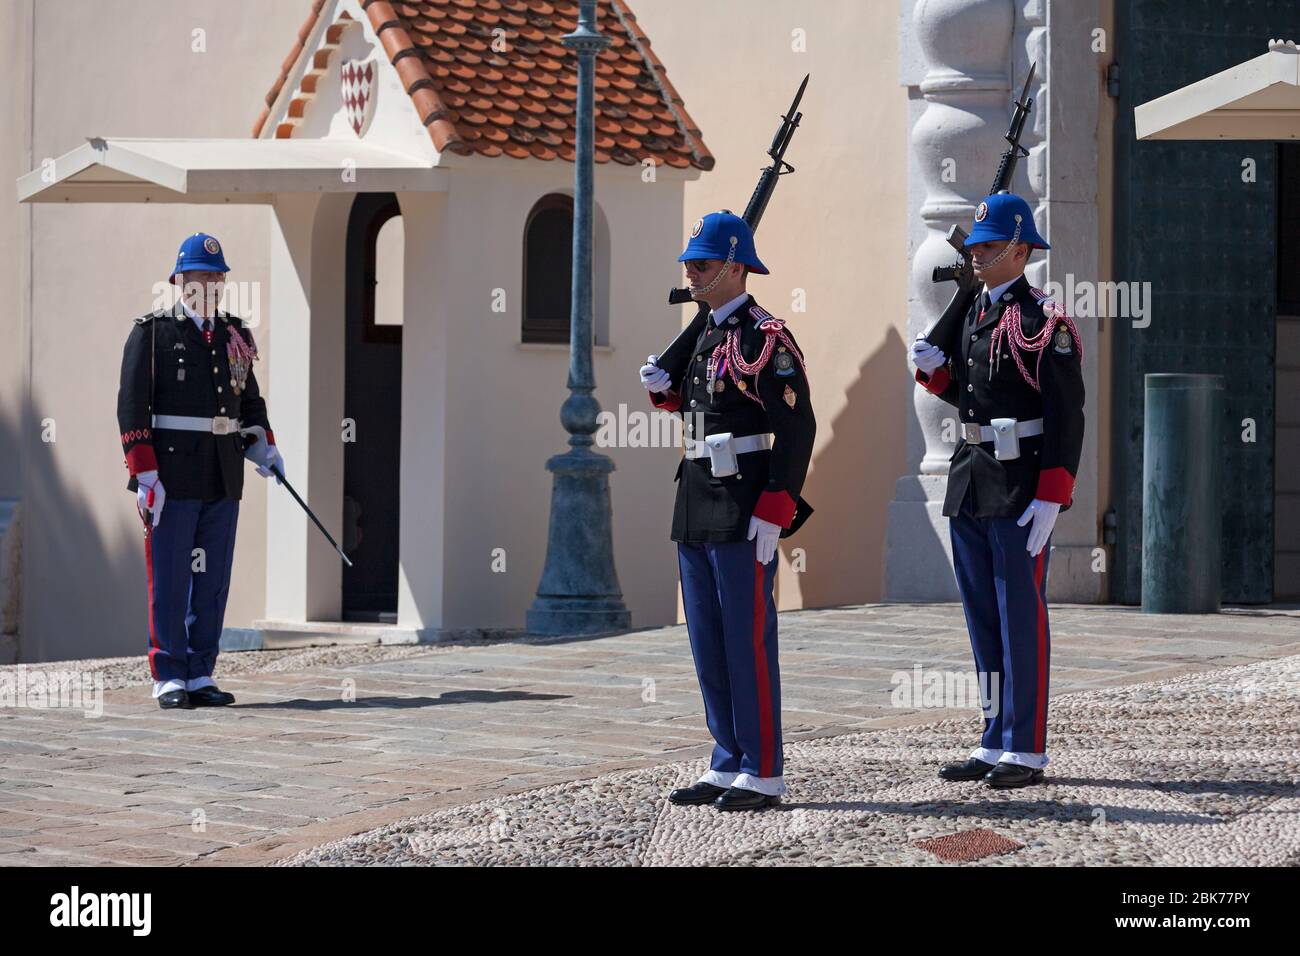 Mónaco - 28 2019 de marzo: Cambio de guardia frente a la entrada del Palacio del Príncipe de Mónaco. Foto de stock